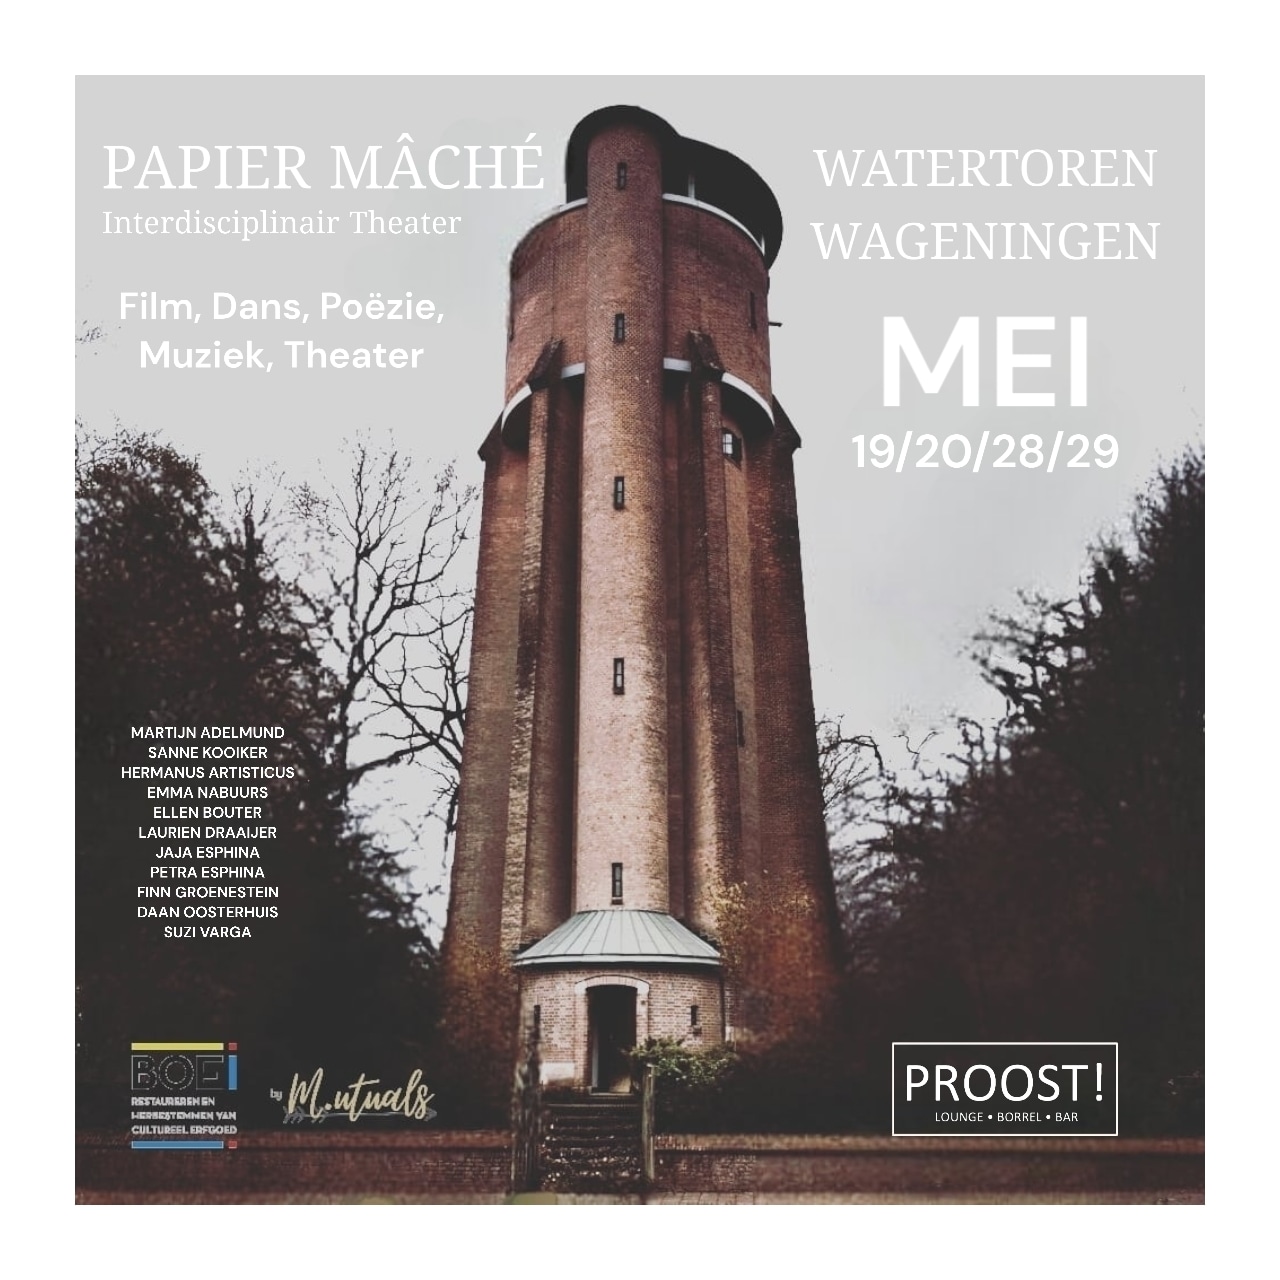 Theater in de watertoren van Wageningen 